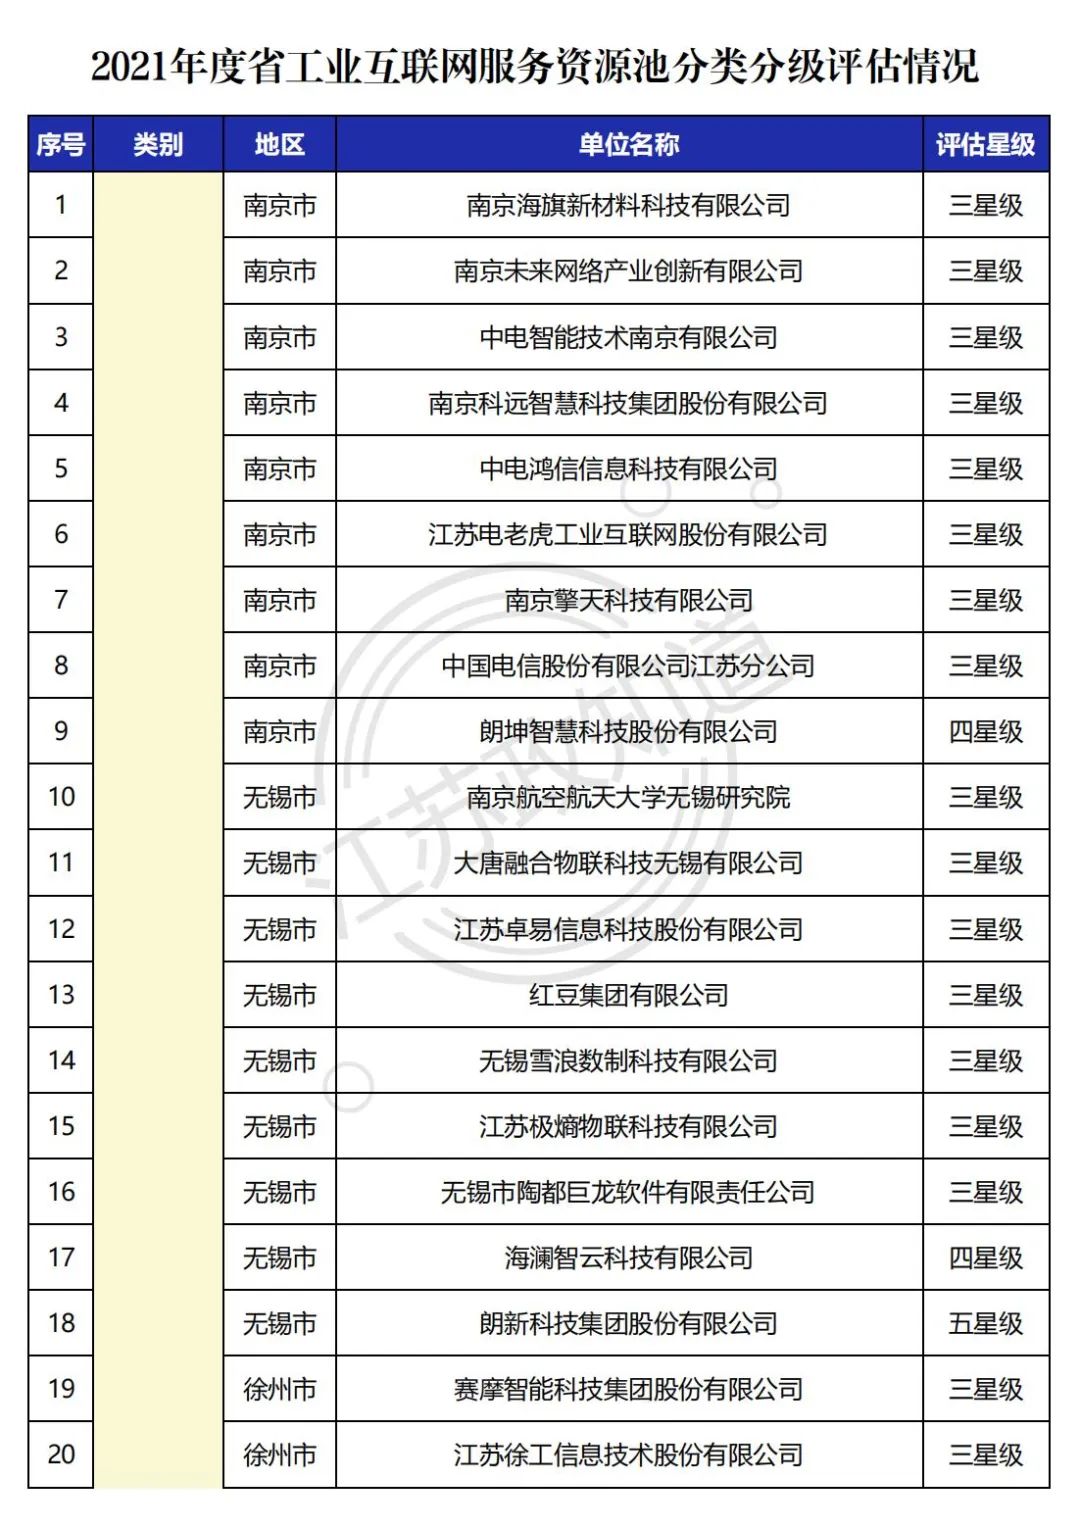 公布丨2021年度江苏省工业互联网服务资源池分类分级评估情况